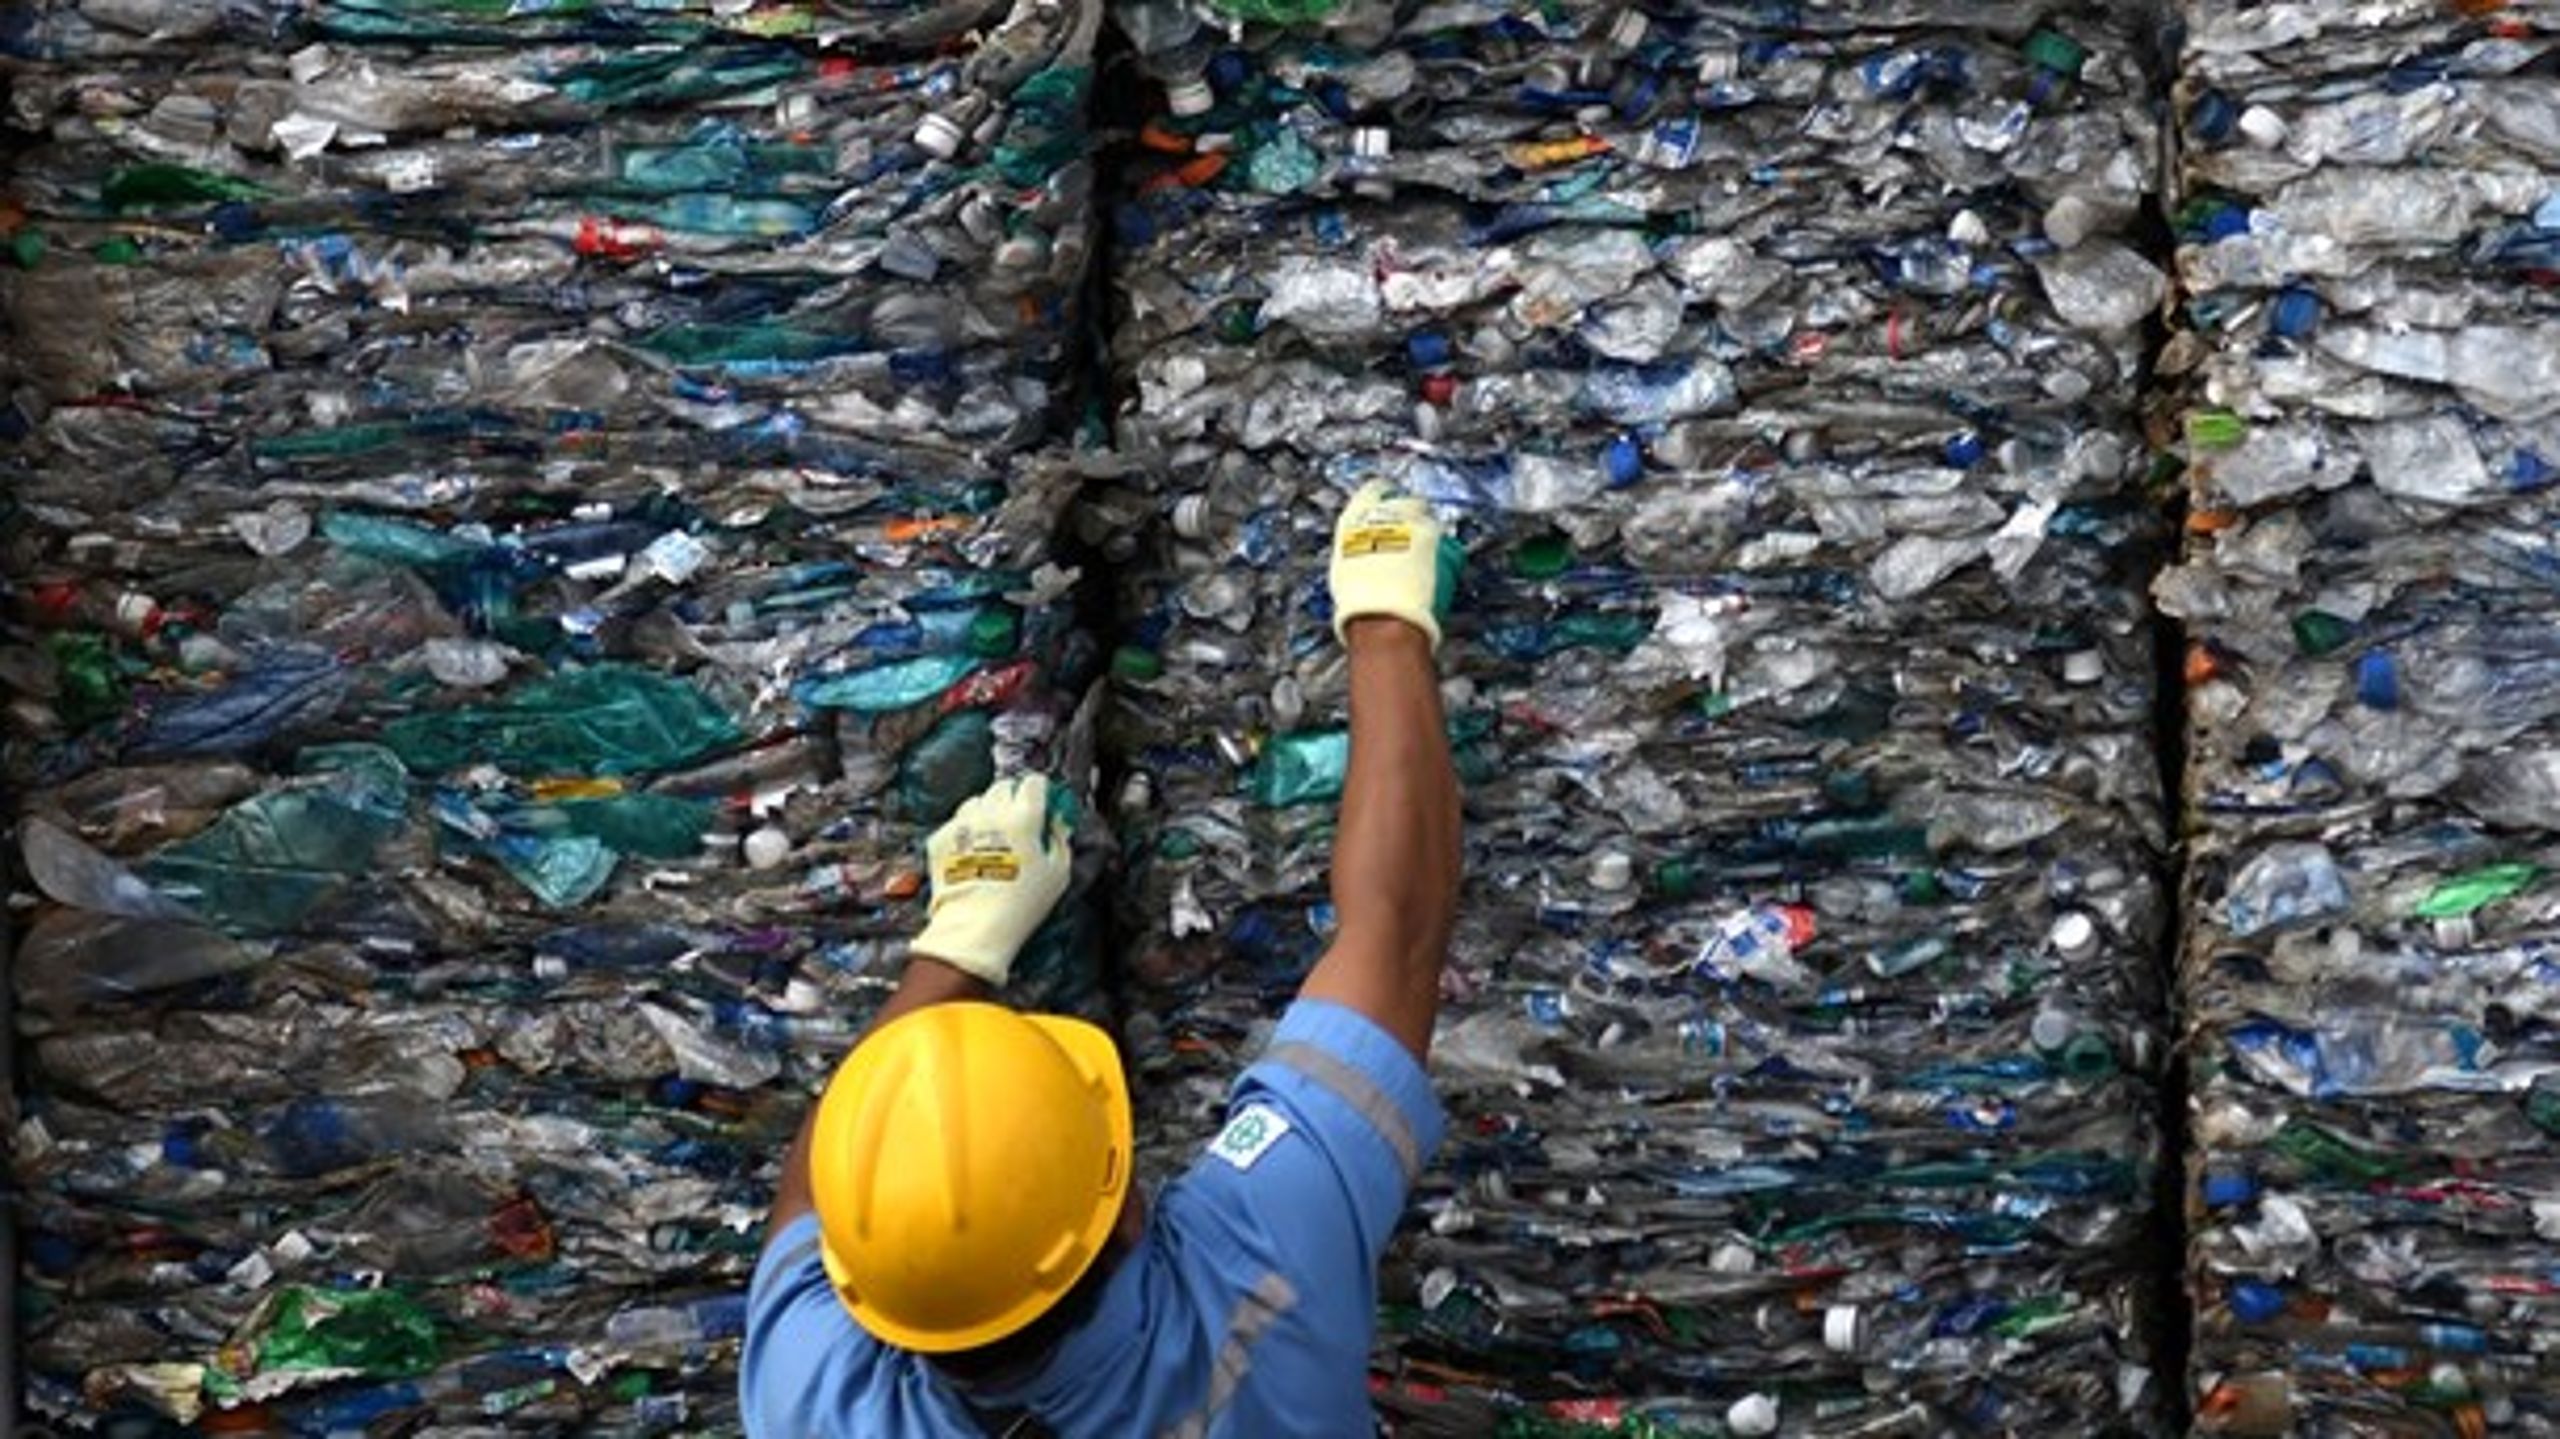 En TV 2-dokumentar afslørede, at dansk plastikaffald&nbsp;kunne spores helt til&nbsp;Malaysia og Indonesien. Det kalder på et forbud mod eksport uden for EU, mener Plastic Change.